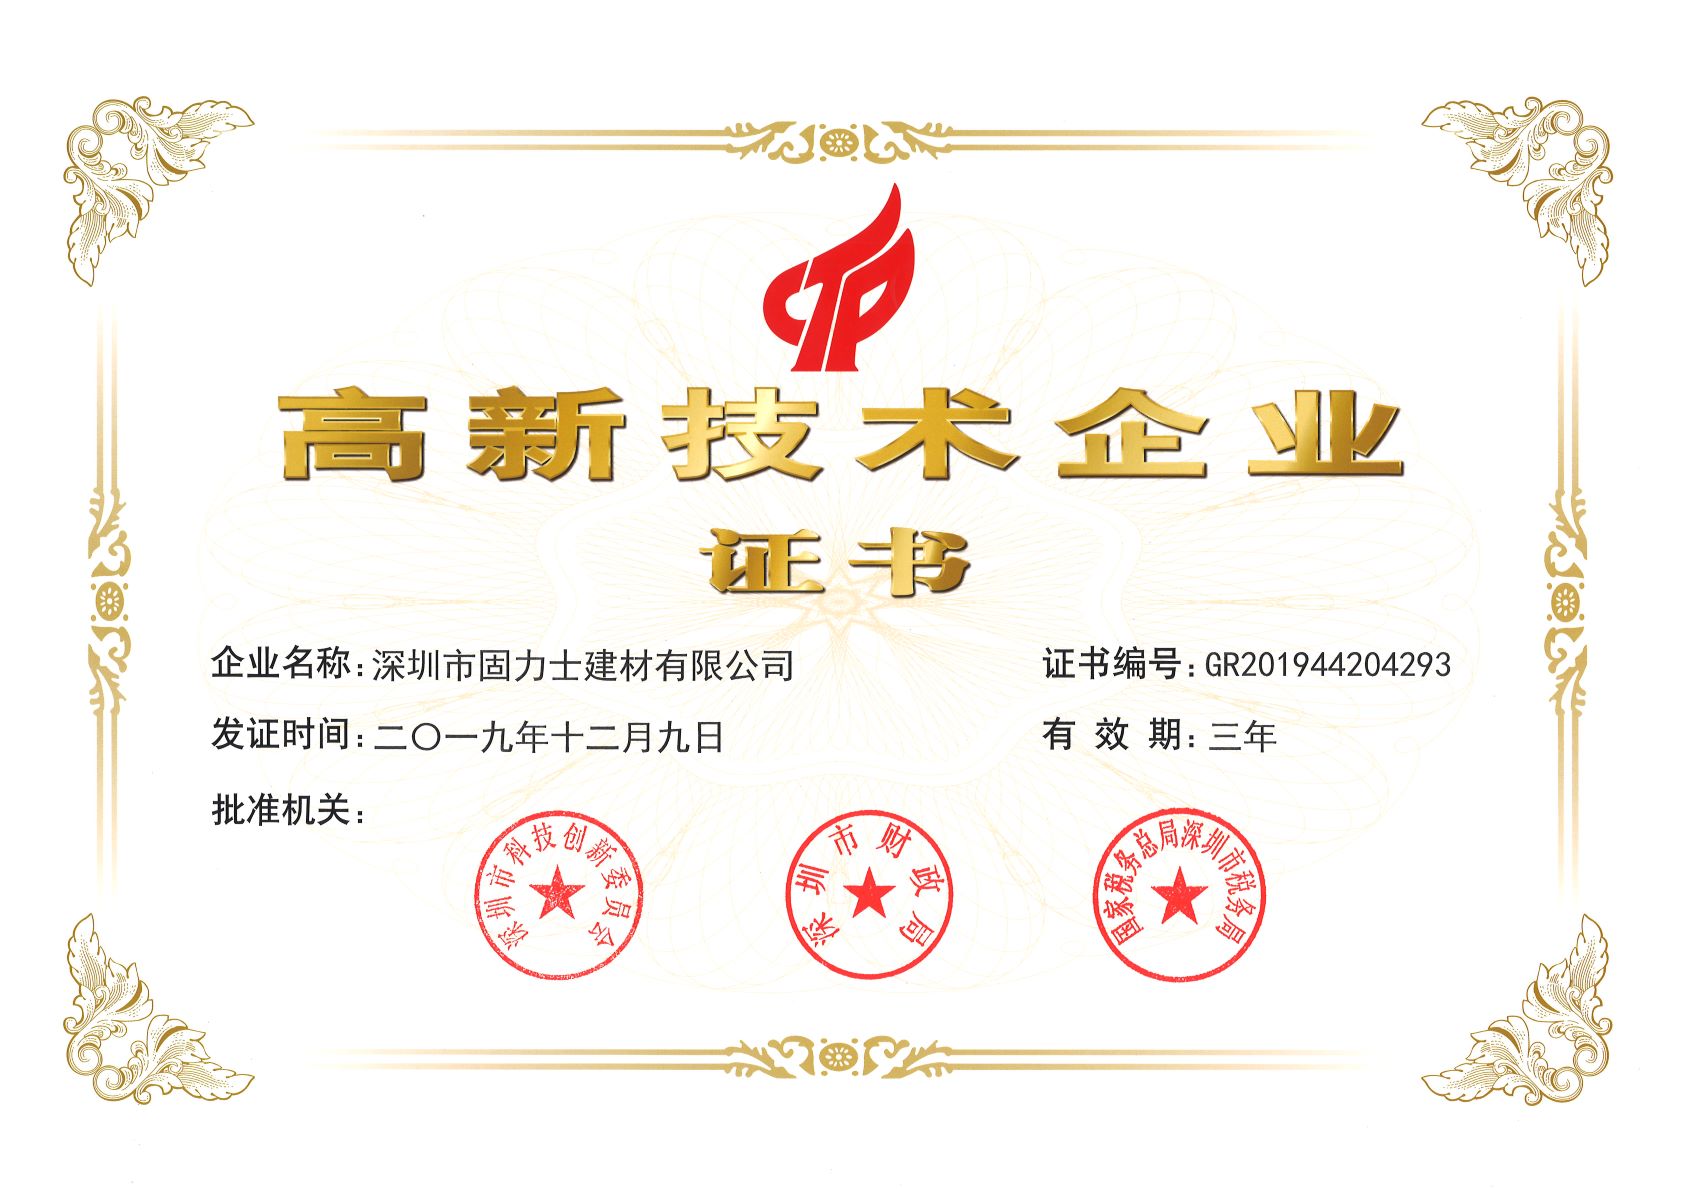 轮台热烈祝贺深圳市固力士建材有限公司通过高新技术企业认证